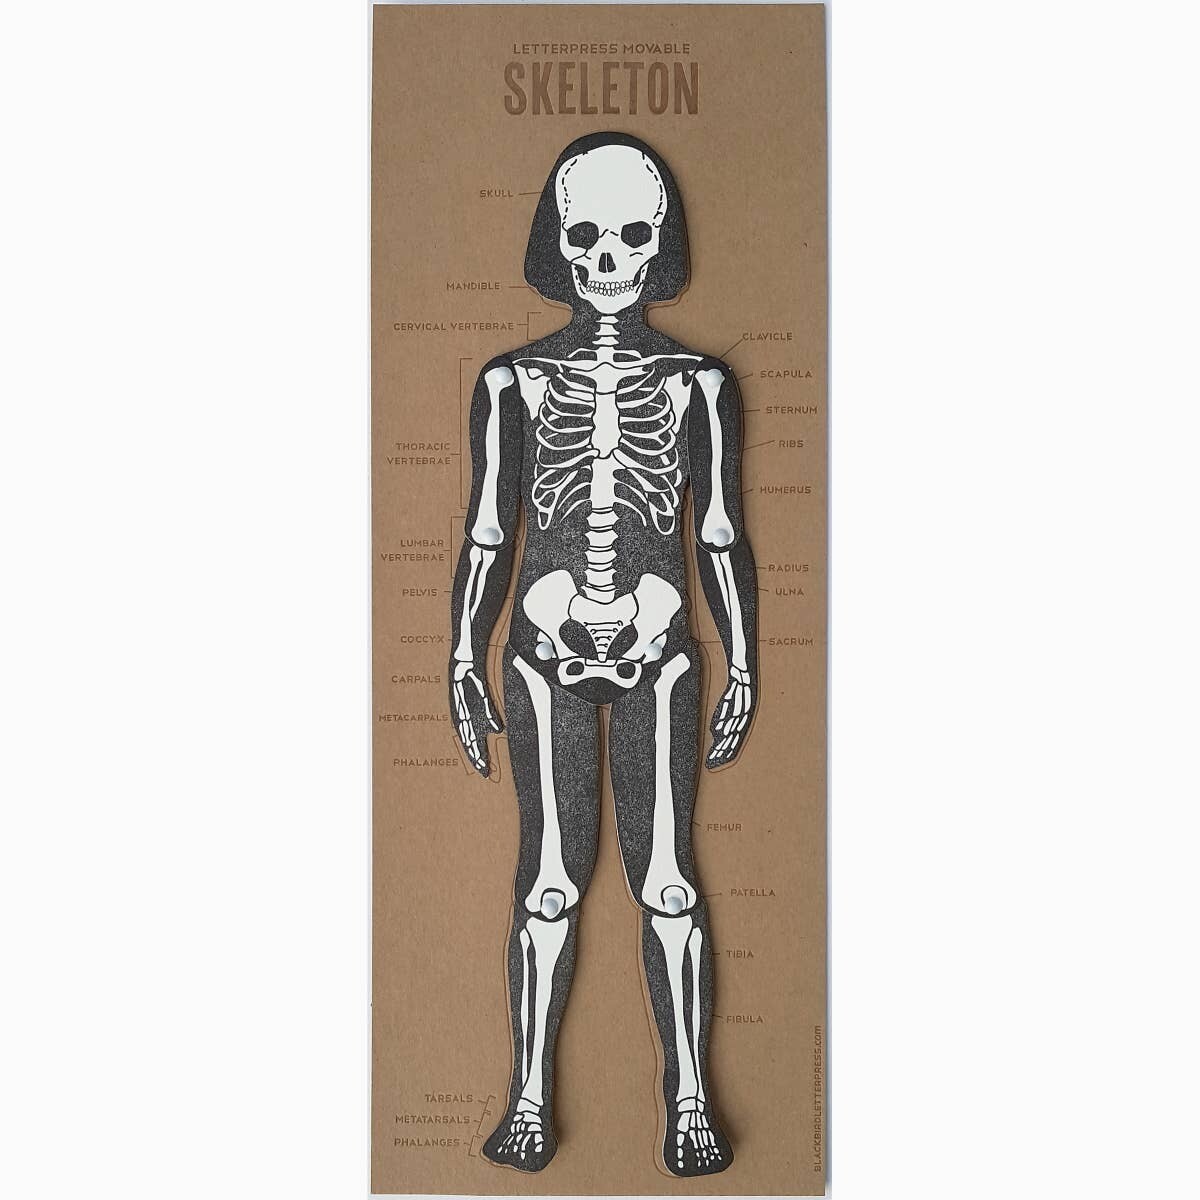 Letterpress Printed Articulated Skeleton